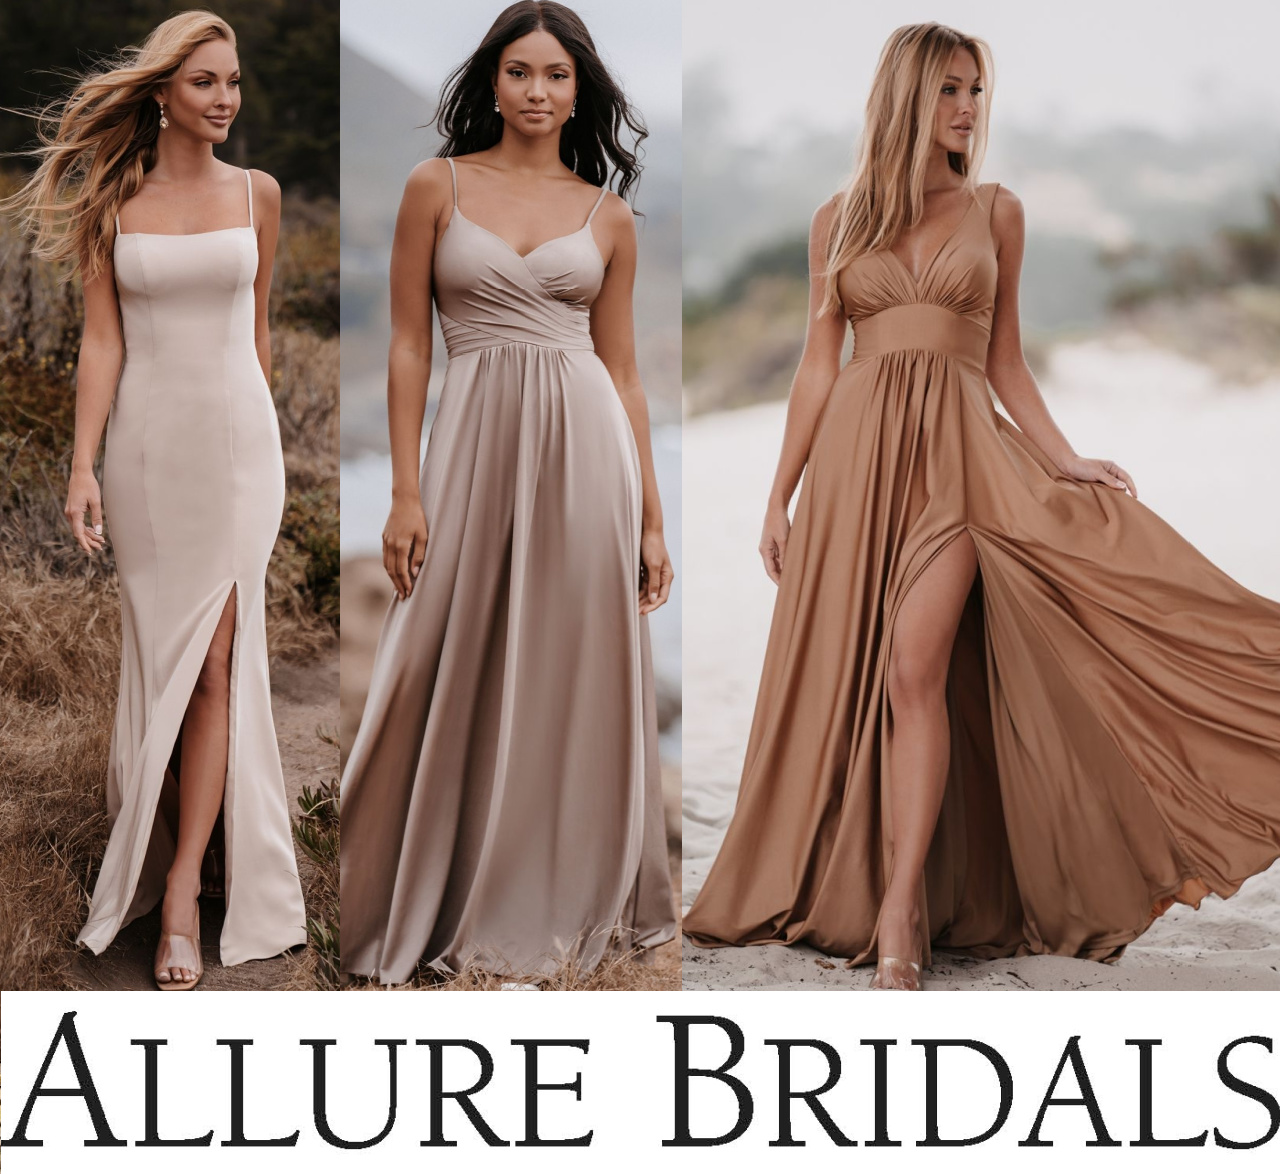 Allure Bridesmaids